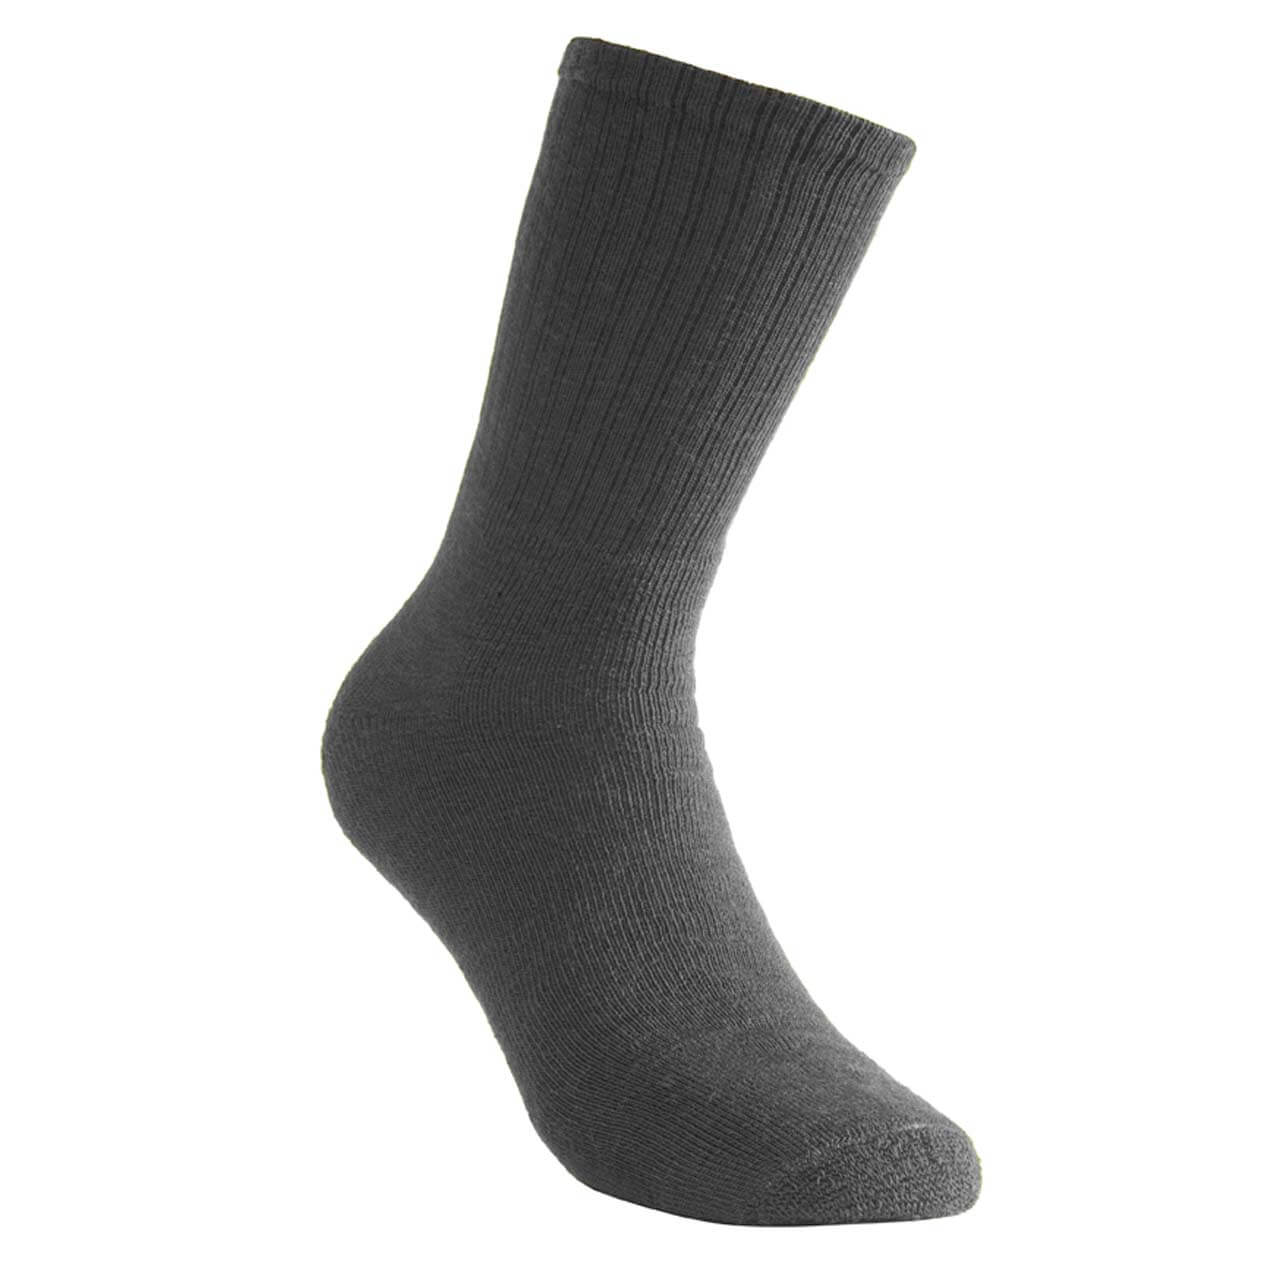 Woolpower Socks 200 - grau, 36-39